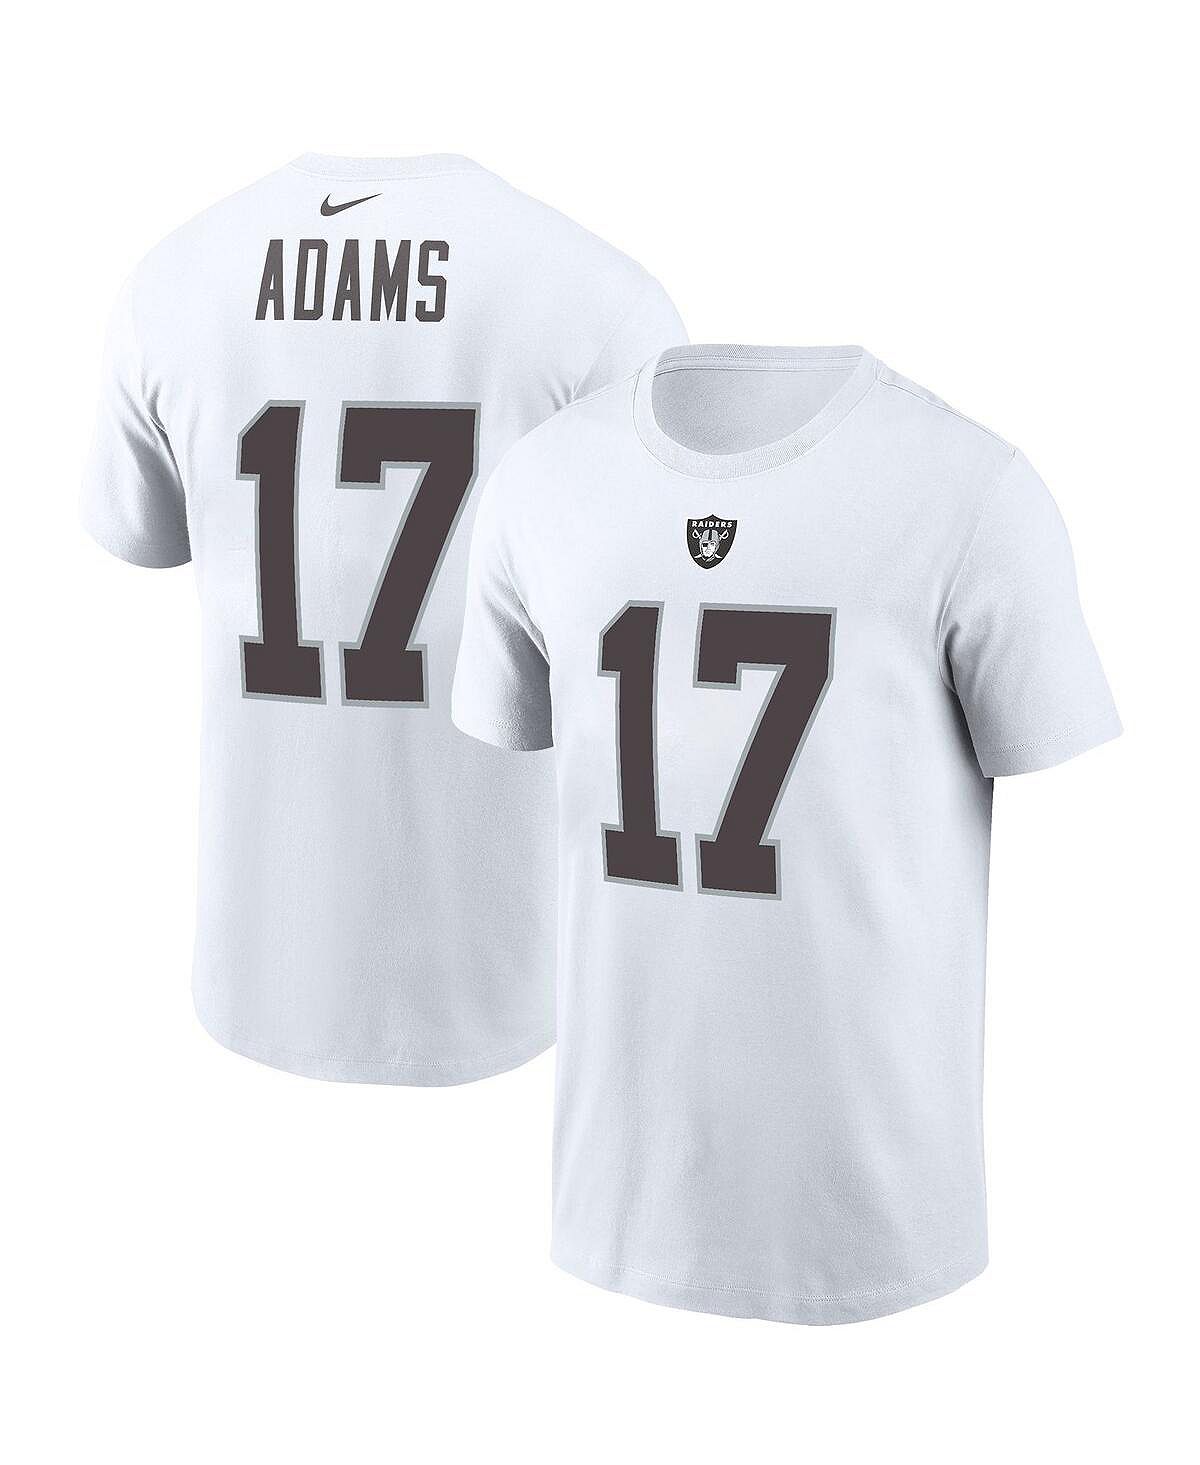 Мужская футболка davante adams white las vegas raiders с именем и номером игрока Nike, белый